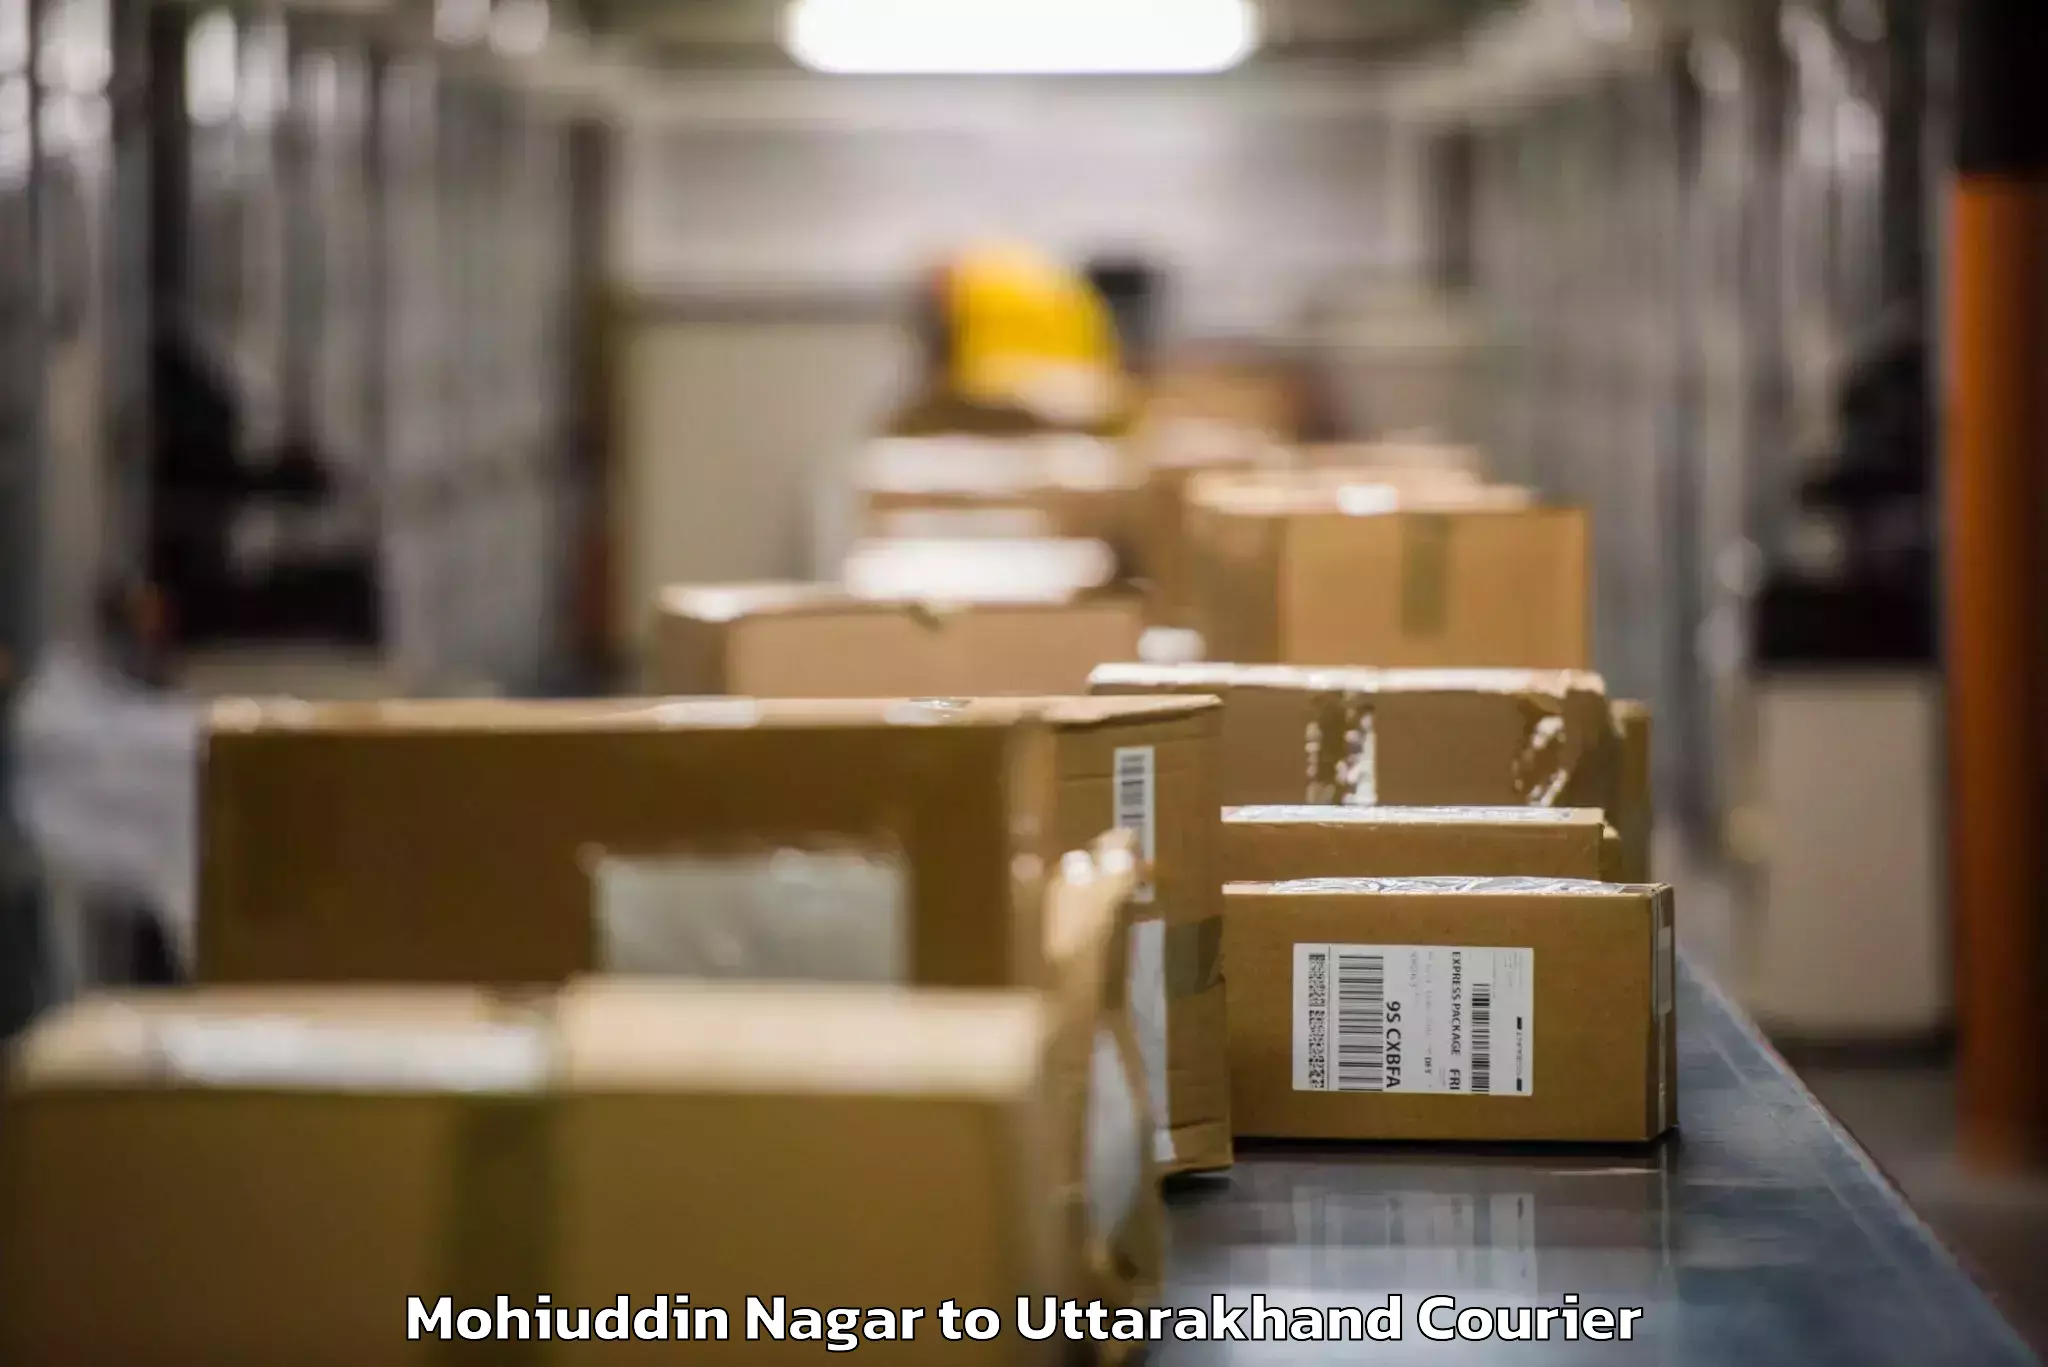 Baggage shipping quotes Mohiuddin Nagar to Ramnagar